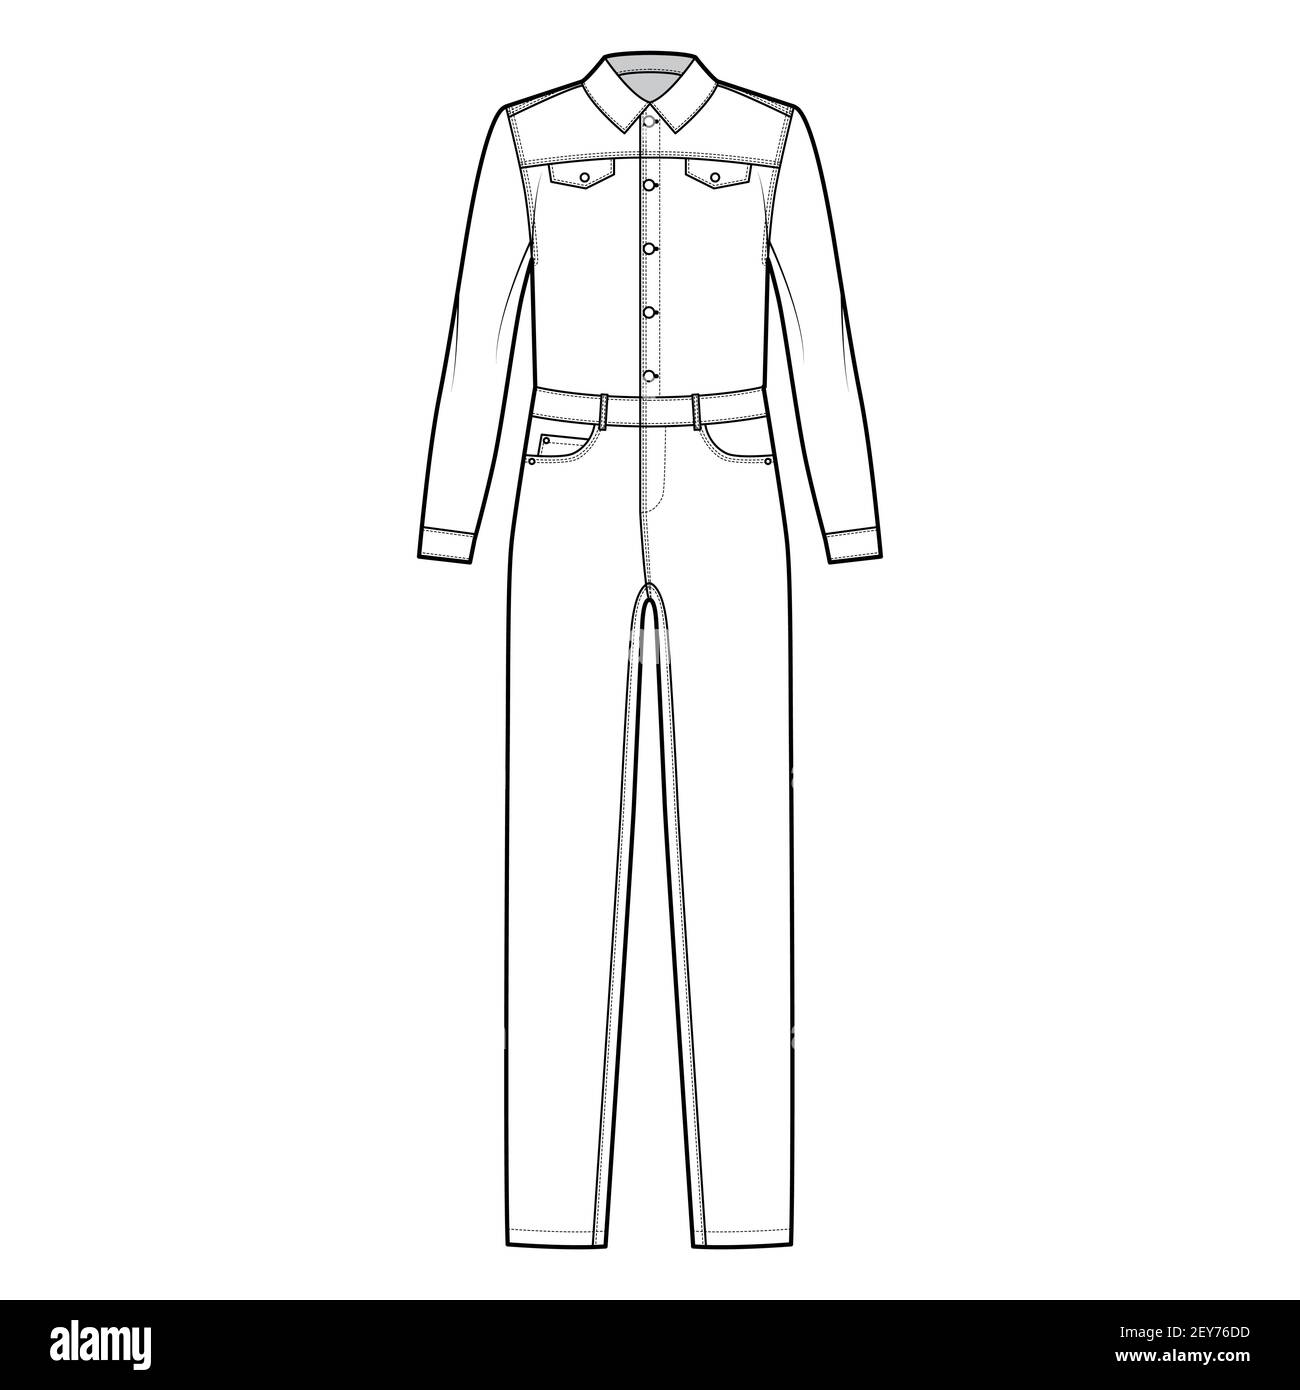 Mono largo peto Dungaree ilustración técnica de moda con longitud completa, cierre de botón, mangas largas, cintura normal, talle alto, bolsillos. plano, estilo de color blanco. Mujeres, CAD mascup